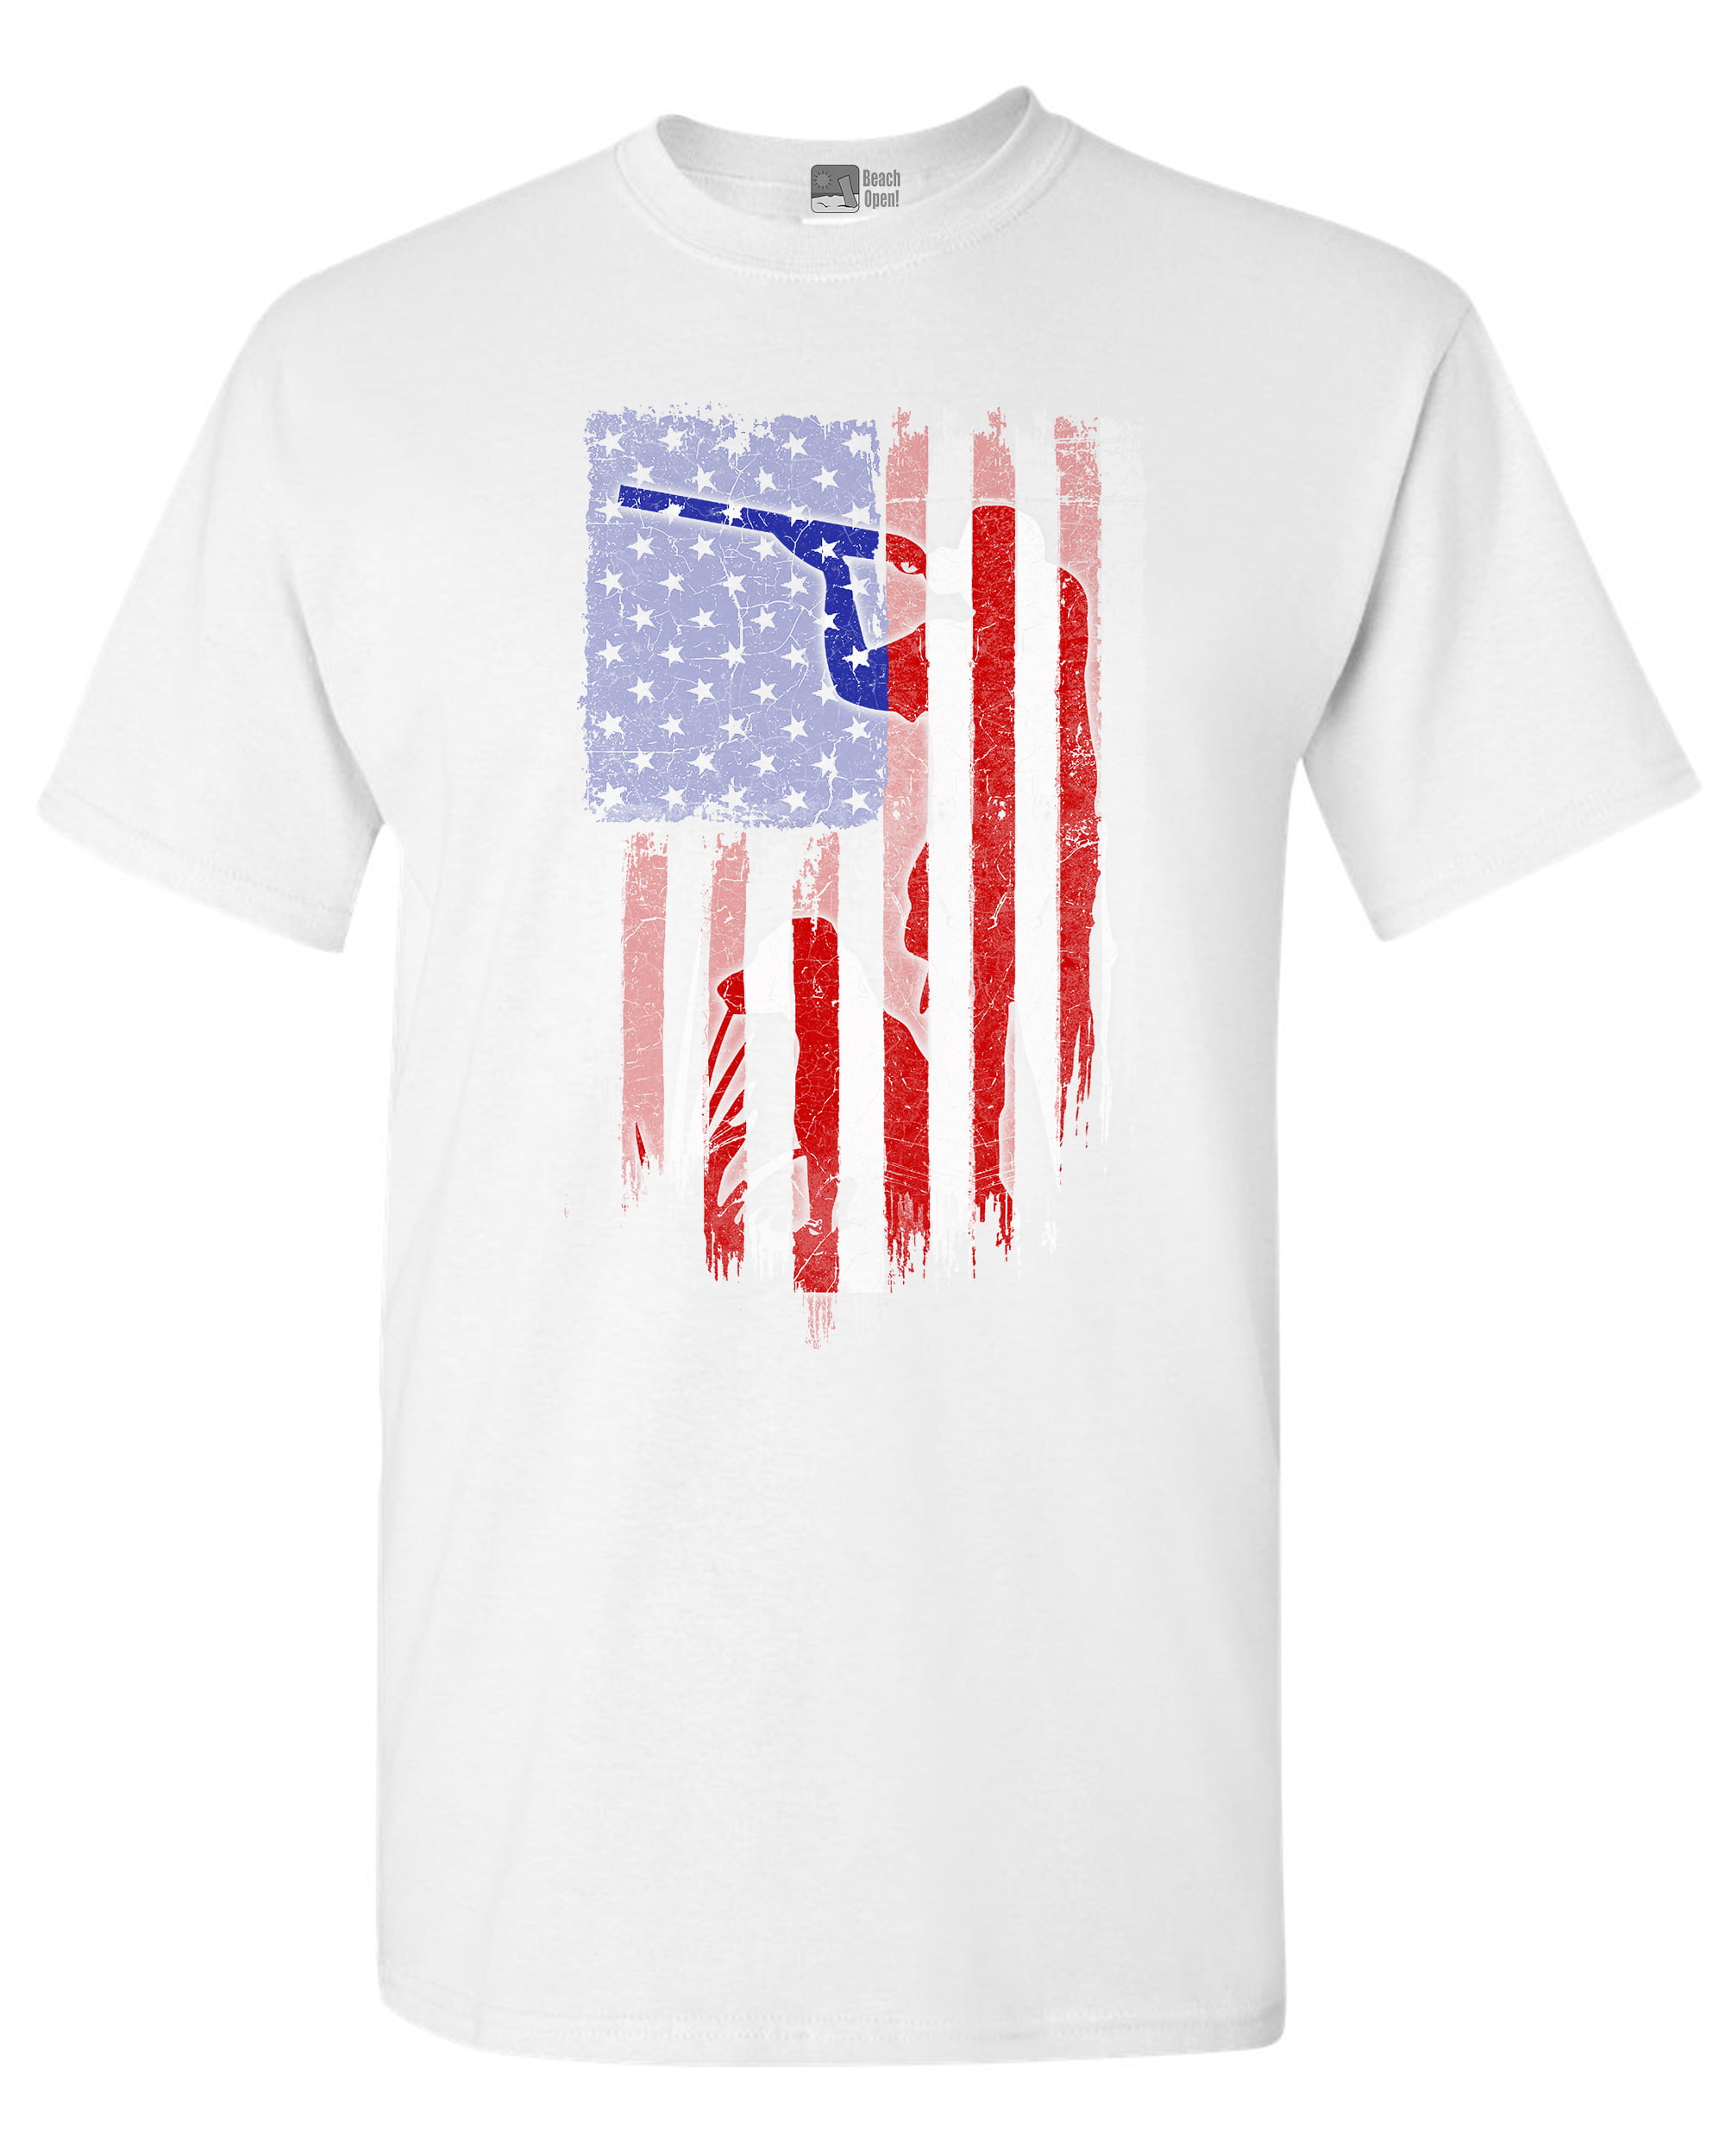 american flag gun shirt